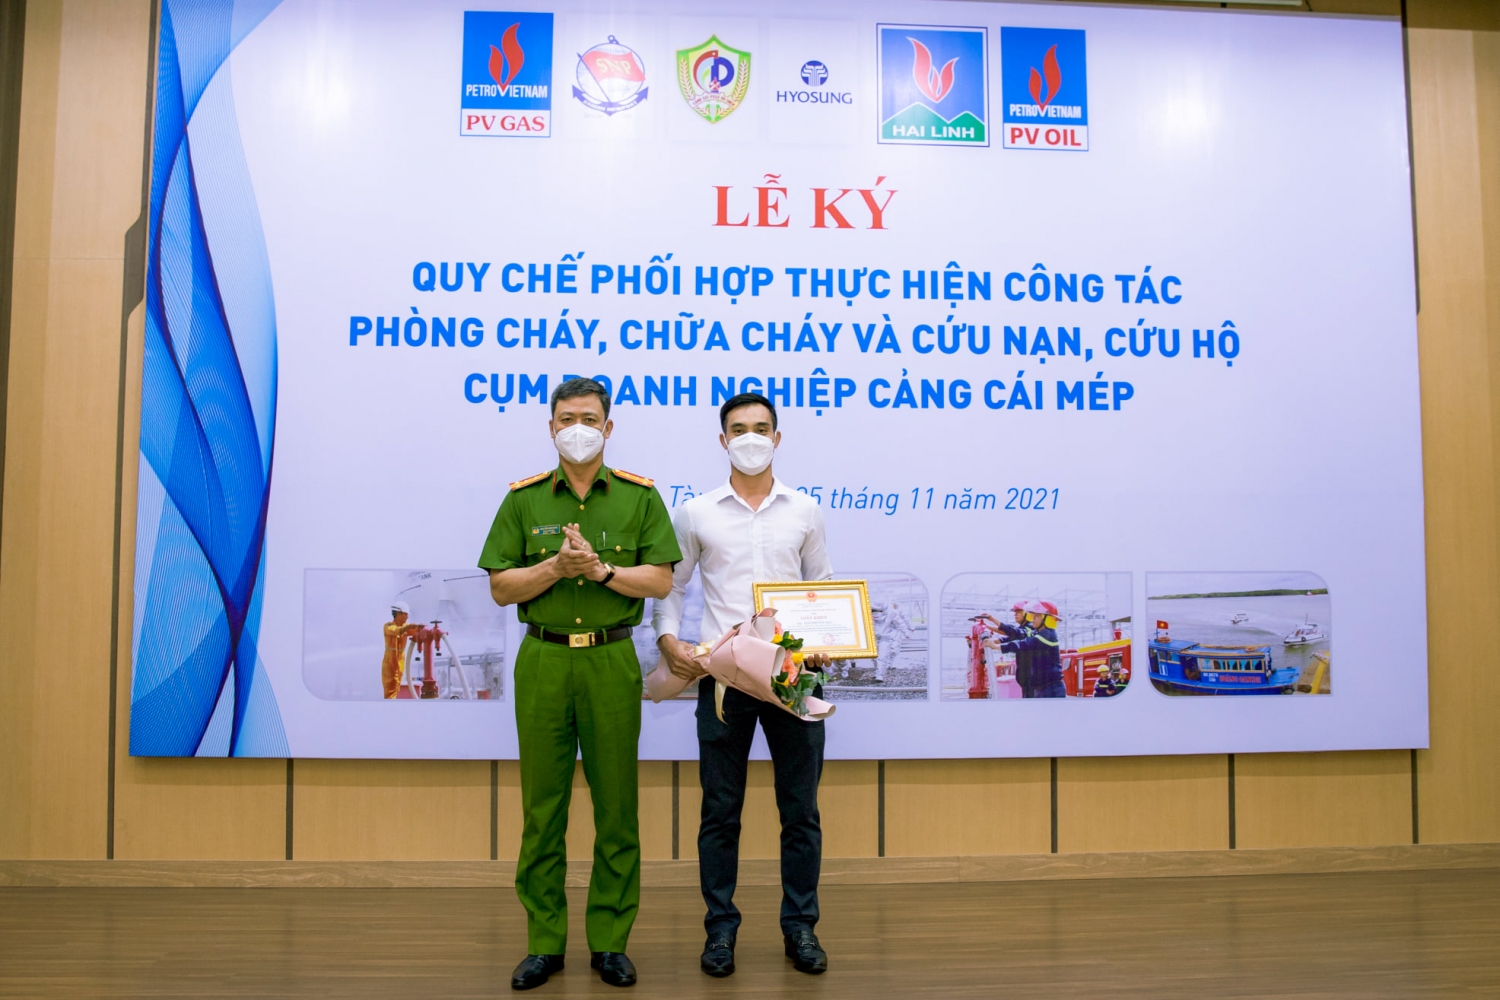 Ông Ngô Phương Bắc - Đội trưởng PCCC Kho cảng PV GAS Vũng Tàu vinh dự được nhận Giấy khen của Giám đốc Công an tỉnh cho cá nhân đã có thành tích xuất sắc trong công tác PCCC & CNCH.